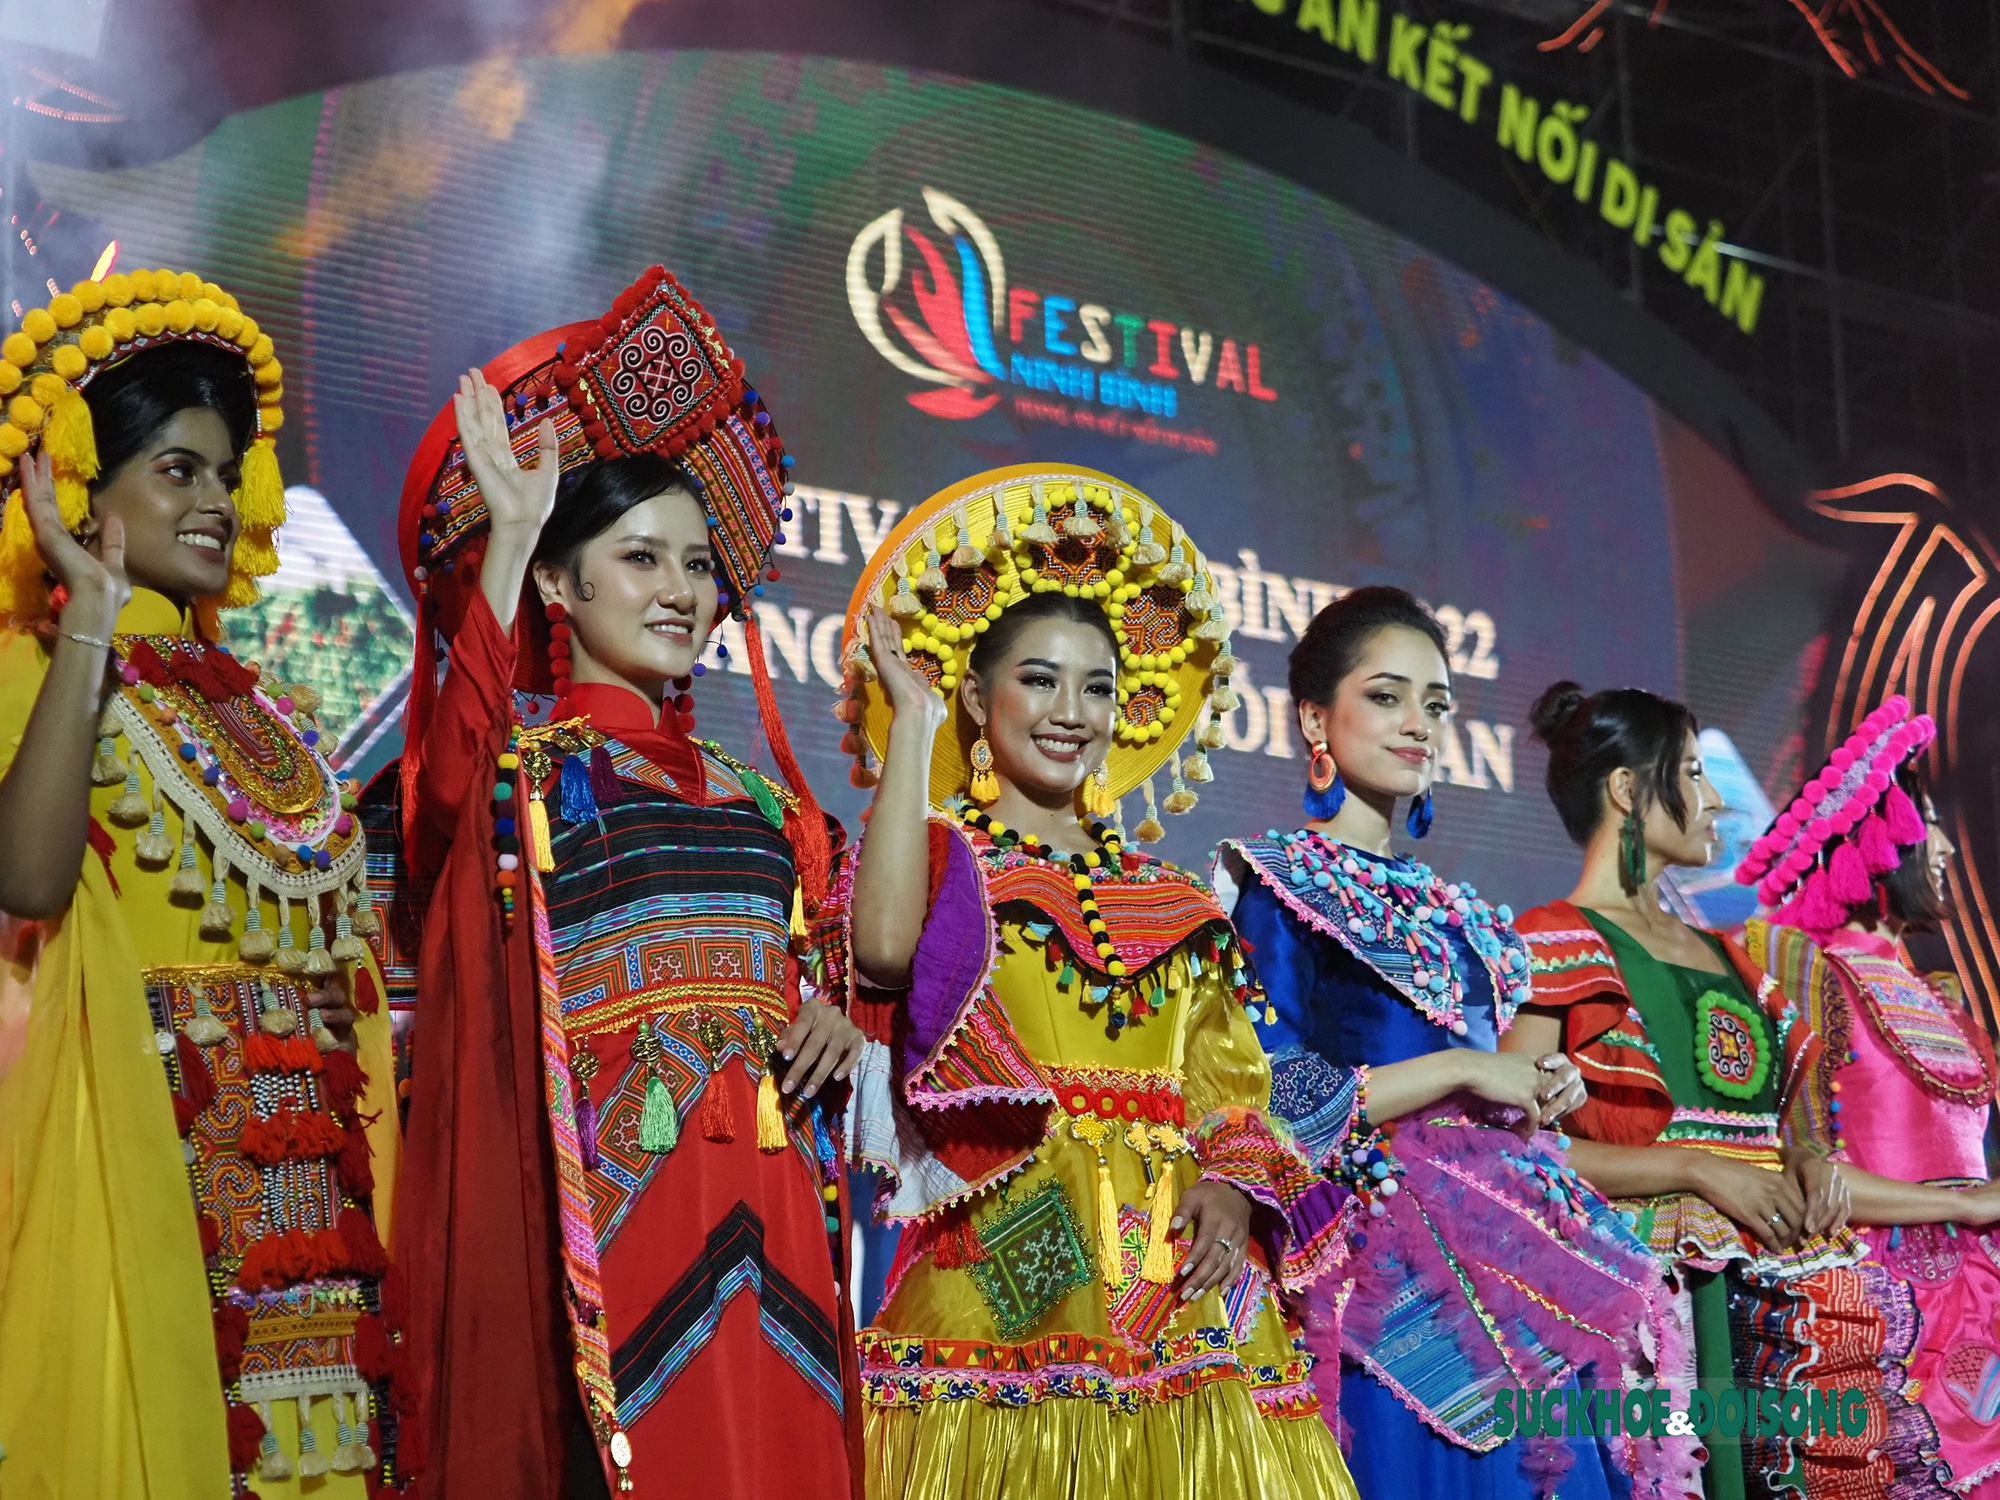 Hoa hậu Du lịch thế giới có mặt trong lễ khai mạc Festival Ninh Binh 2022 - Ảnh 3.